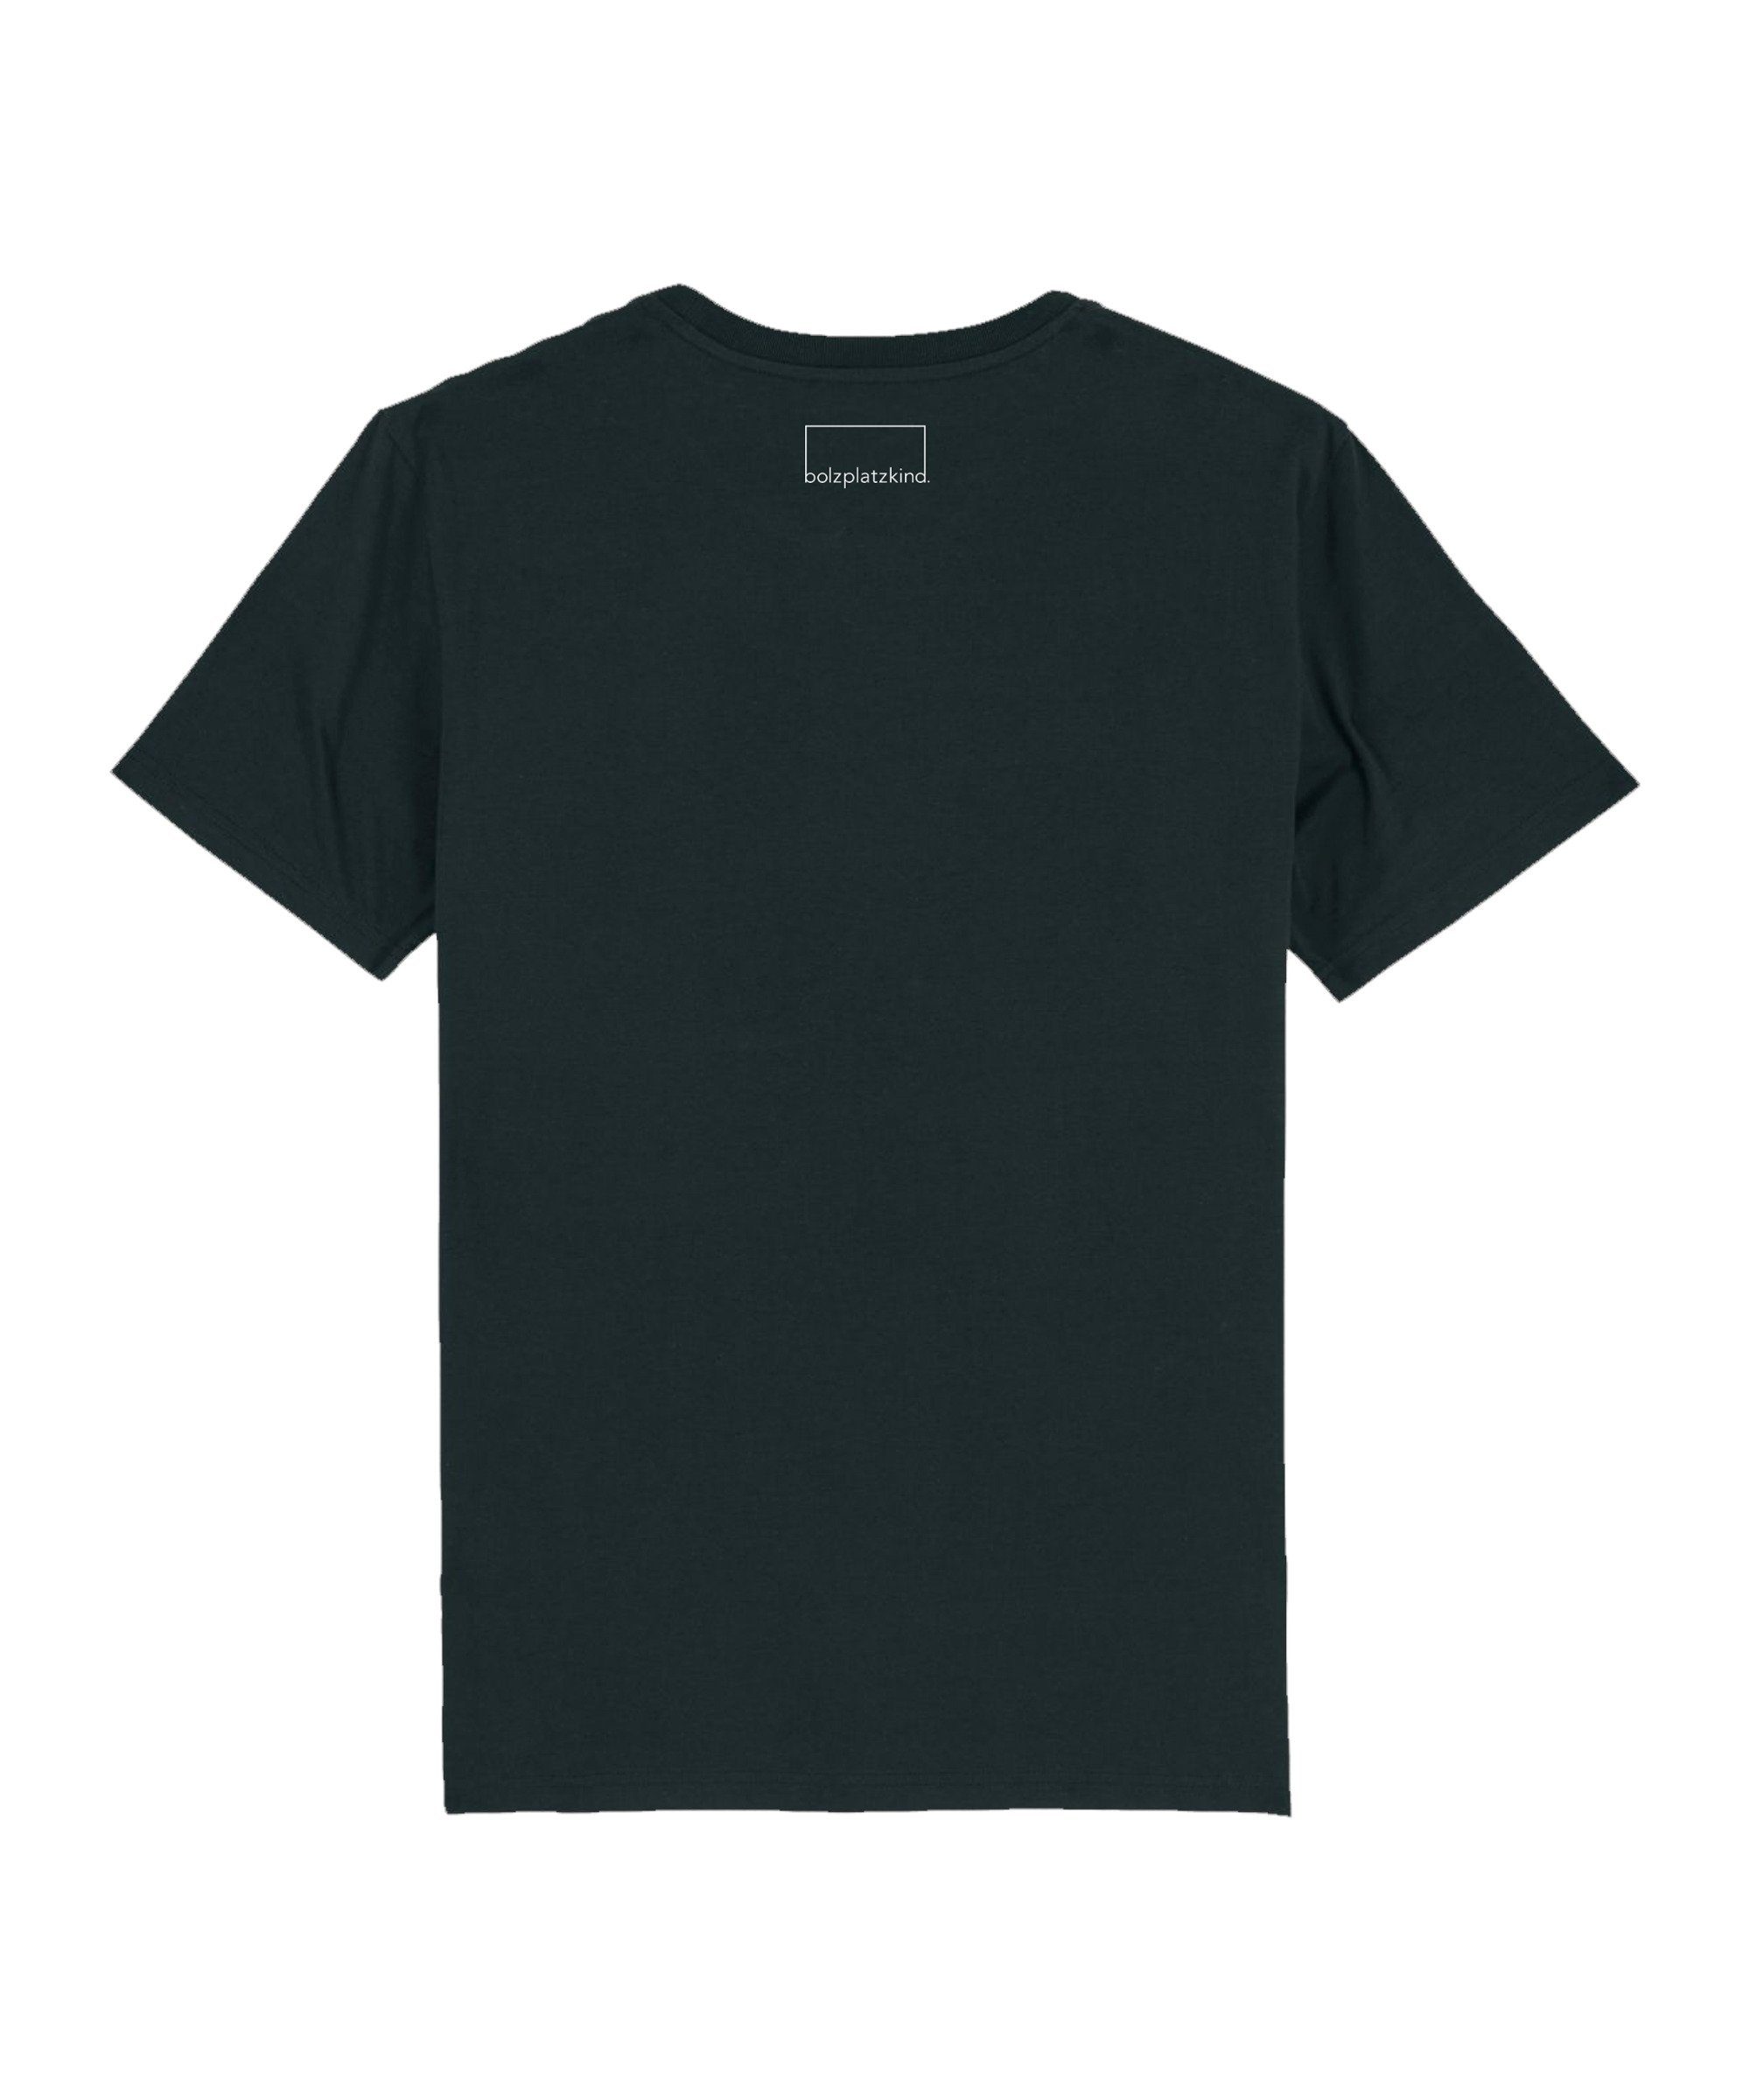 schwarz "Karrieremodus" T-Shirt Nachhaltiges T-Shirt Produkt Bolzplatzkind